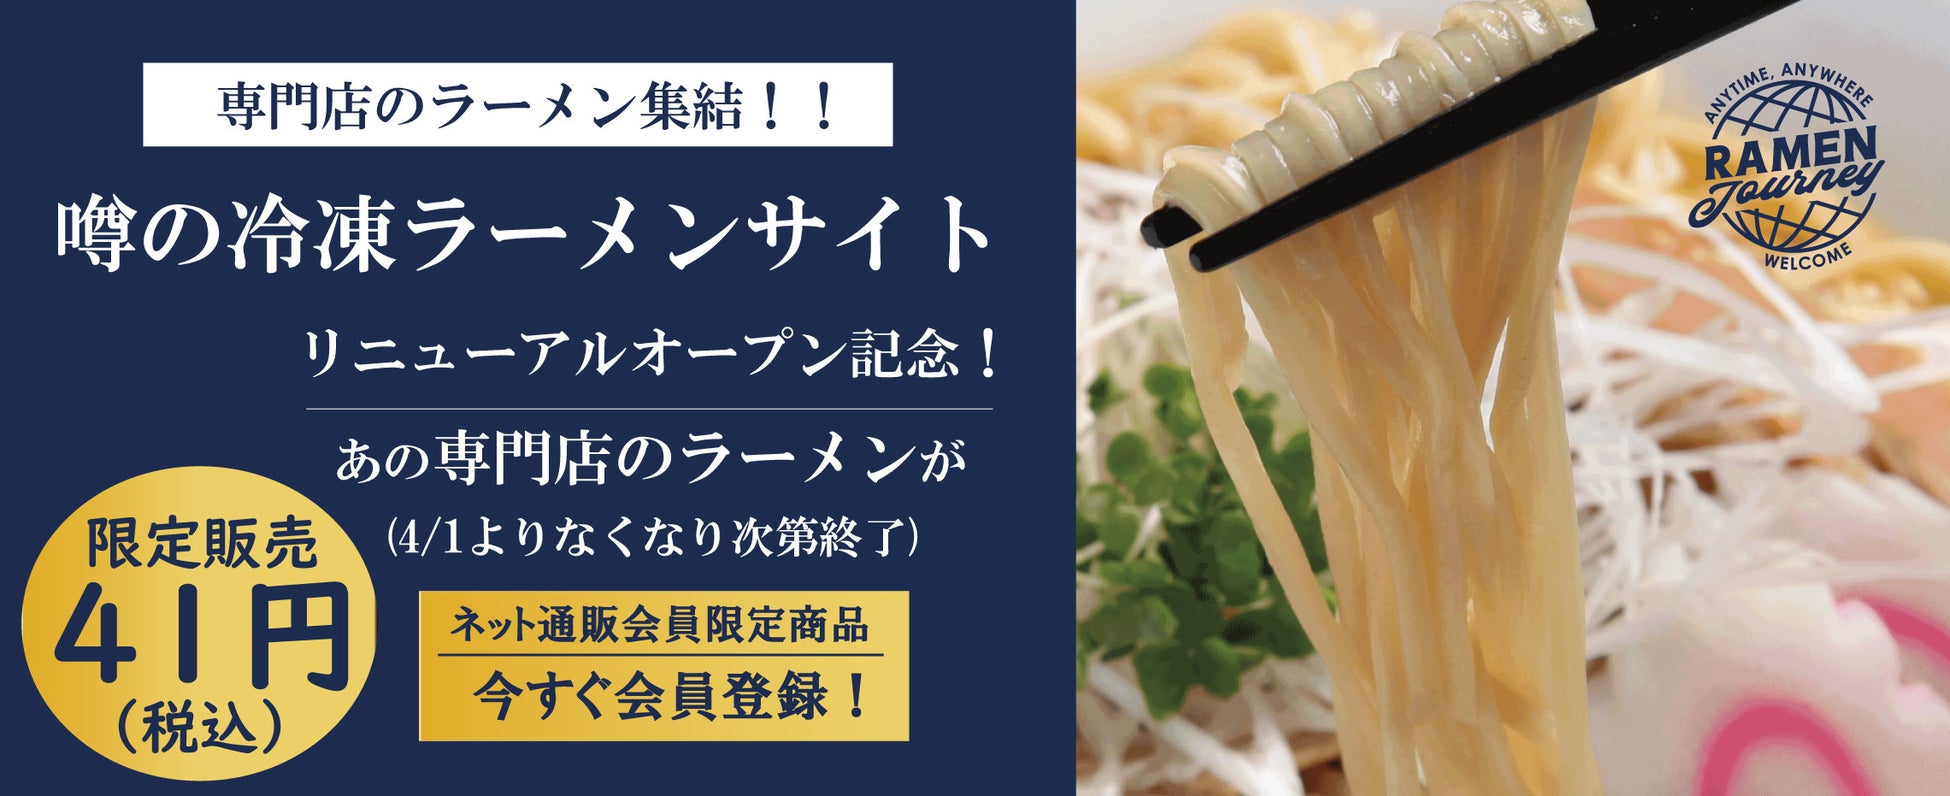 あの幻の銘店のラーメンが、なんと41円！冷凍ラーメンEC『ラーメン Journey』リニューアルオープン祭りが4/1スタート！